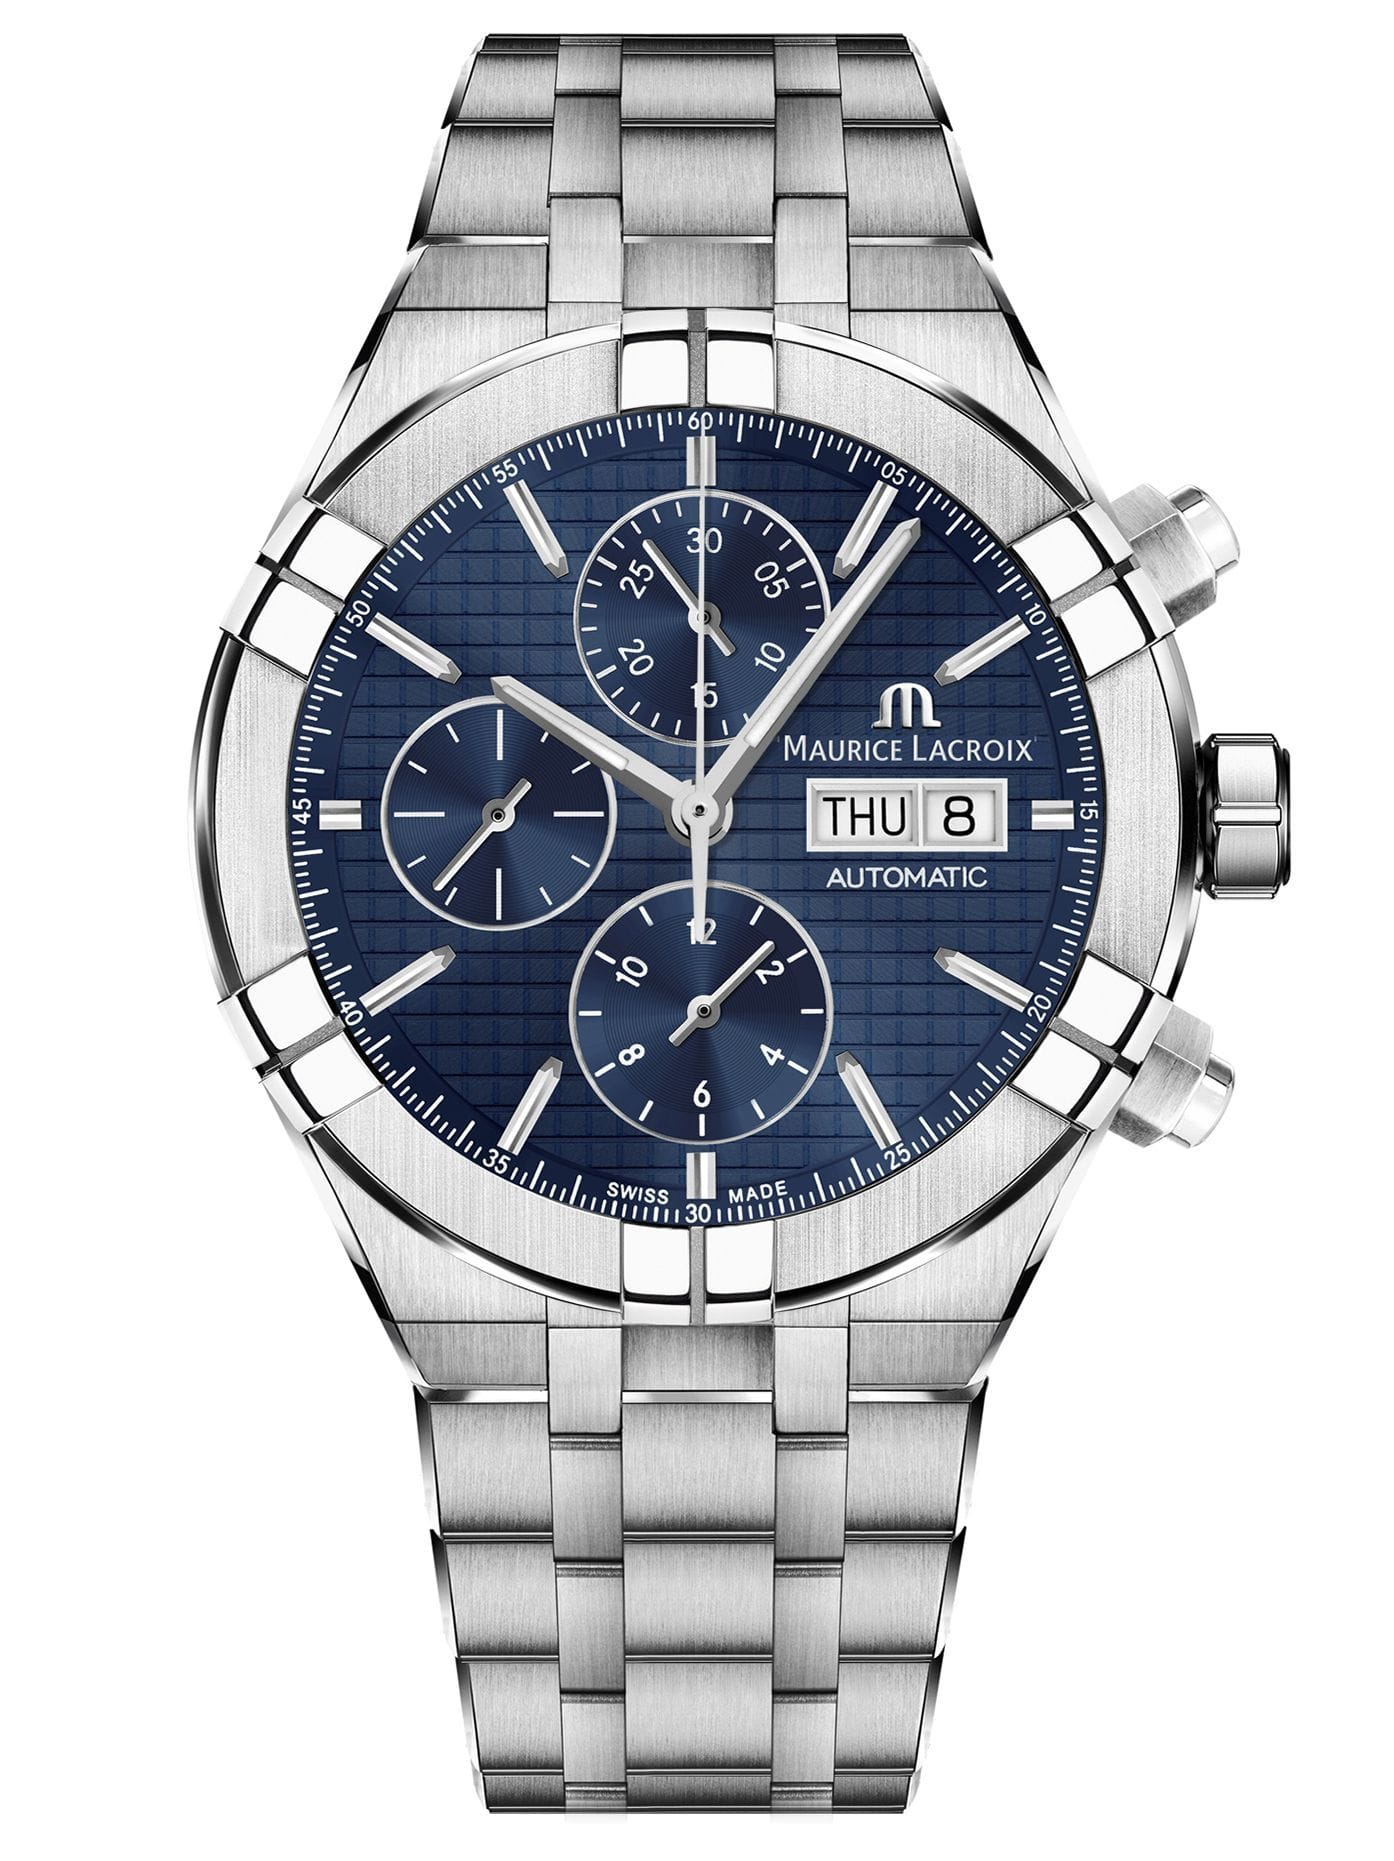 Maurice Lacroix - Swiss Watch | Malaysia's Premier Luxury Watch Retailer